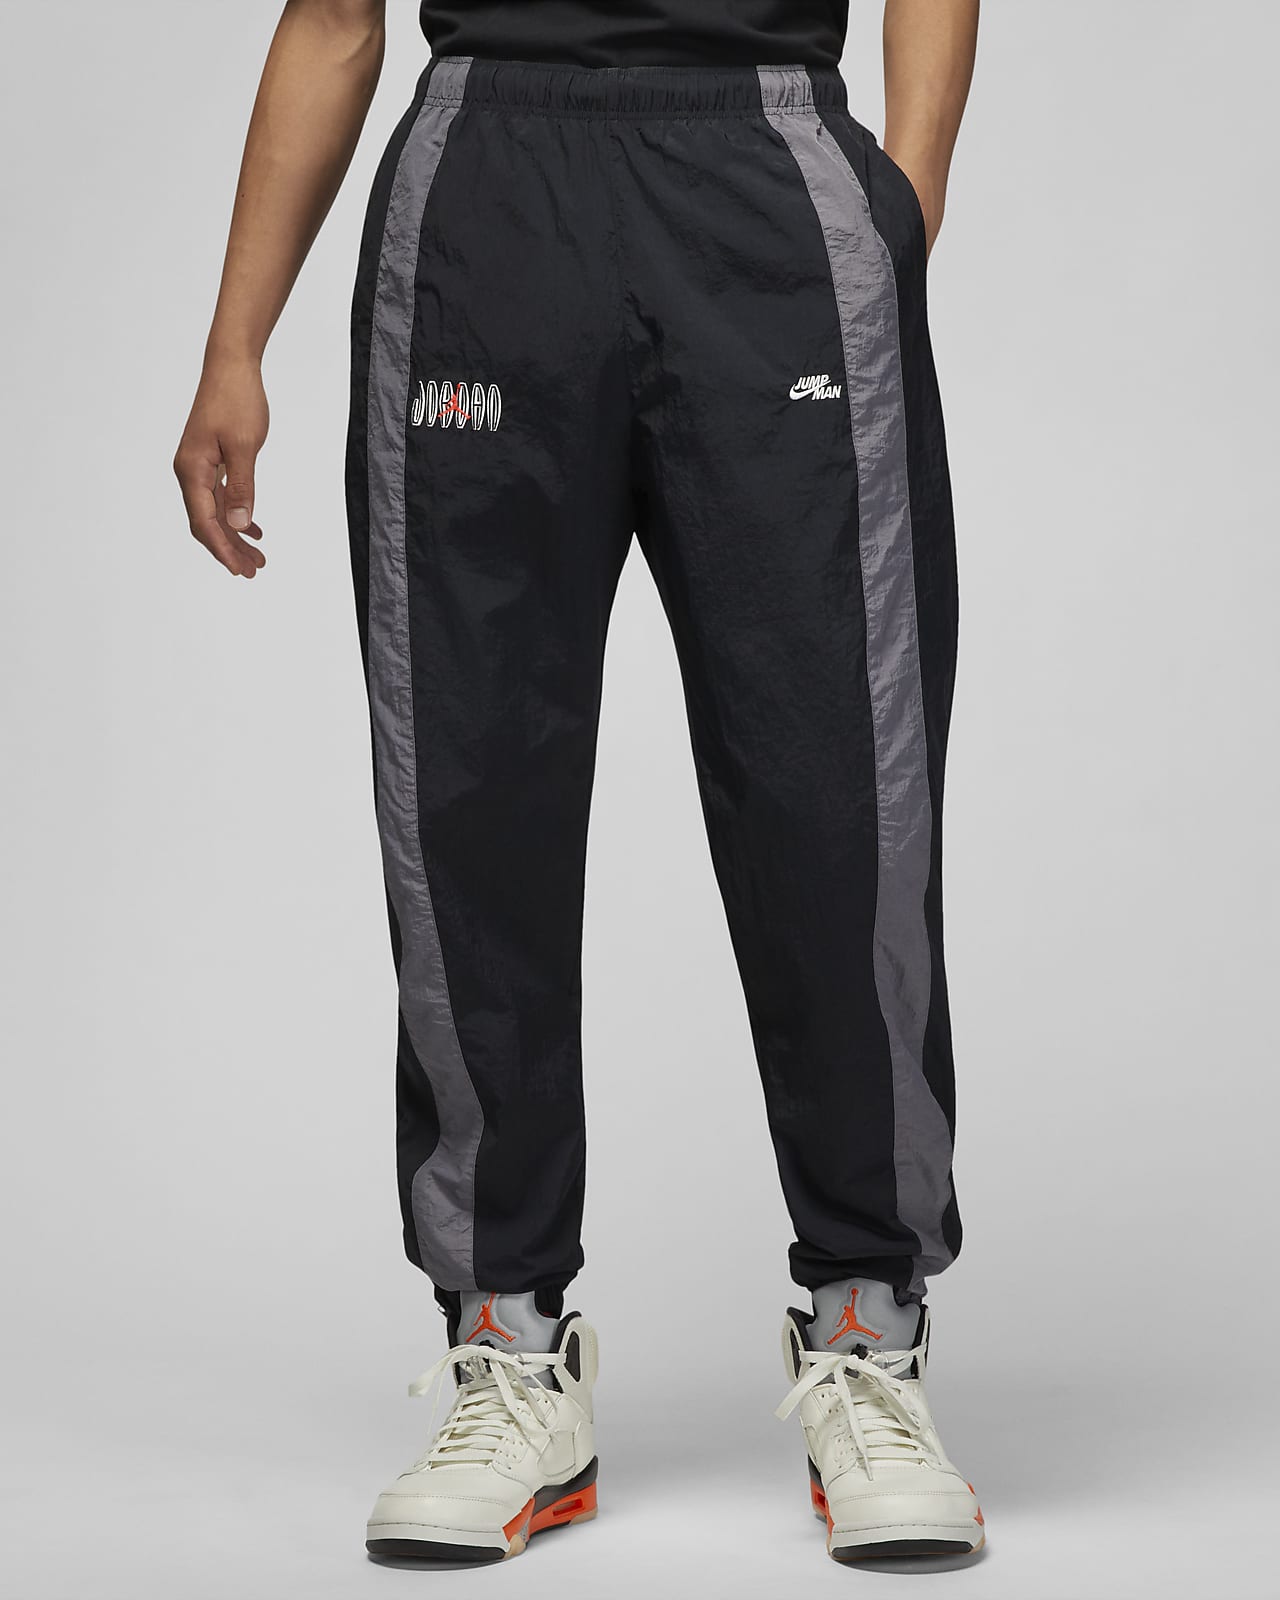 Nike公式 ジョーダン フライト Mvp メンズ ウーブン パンツ オンラインストア 通販サイト